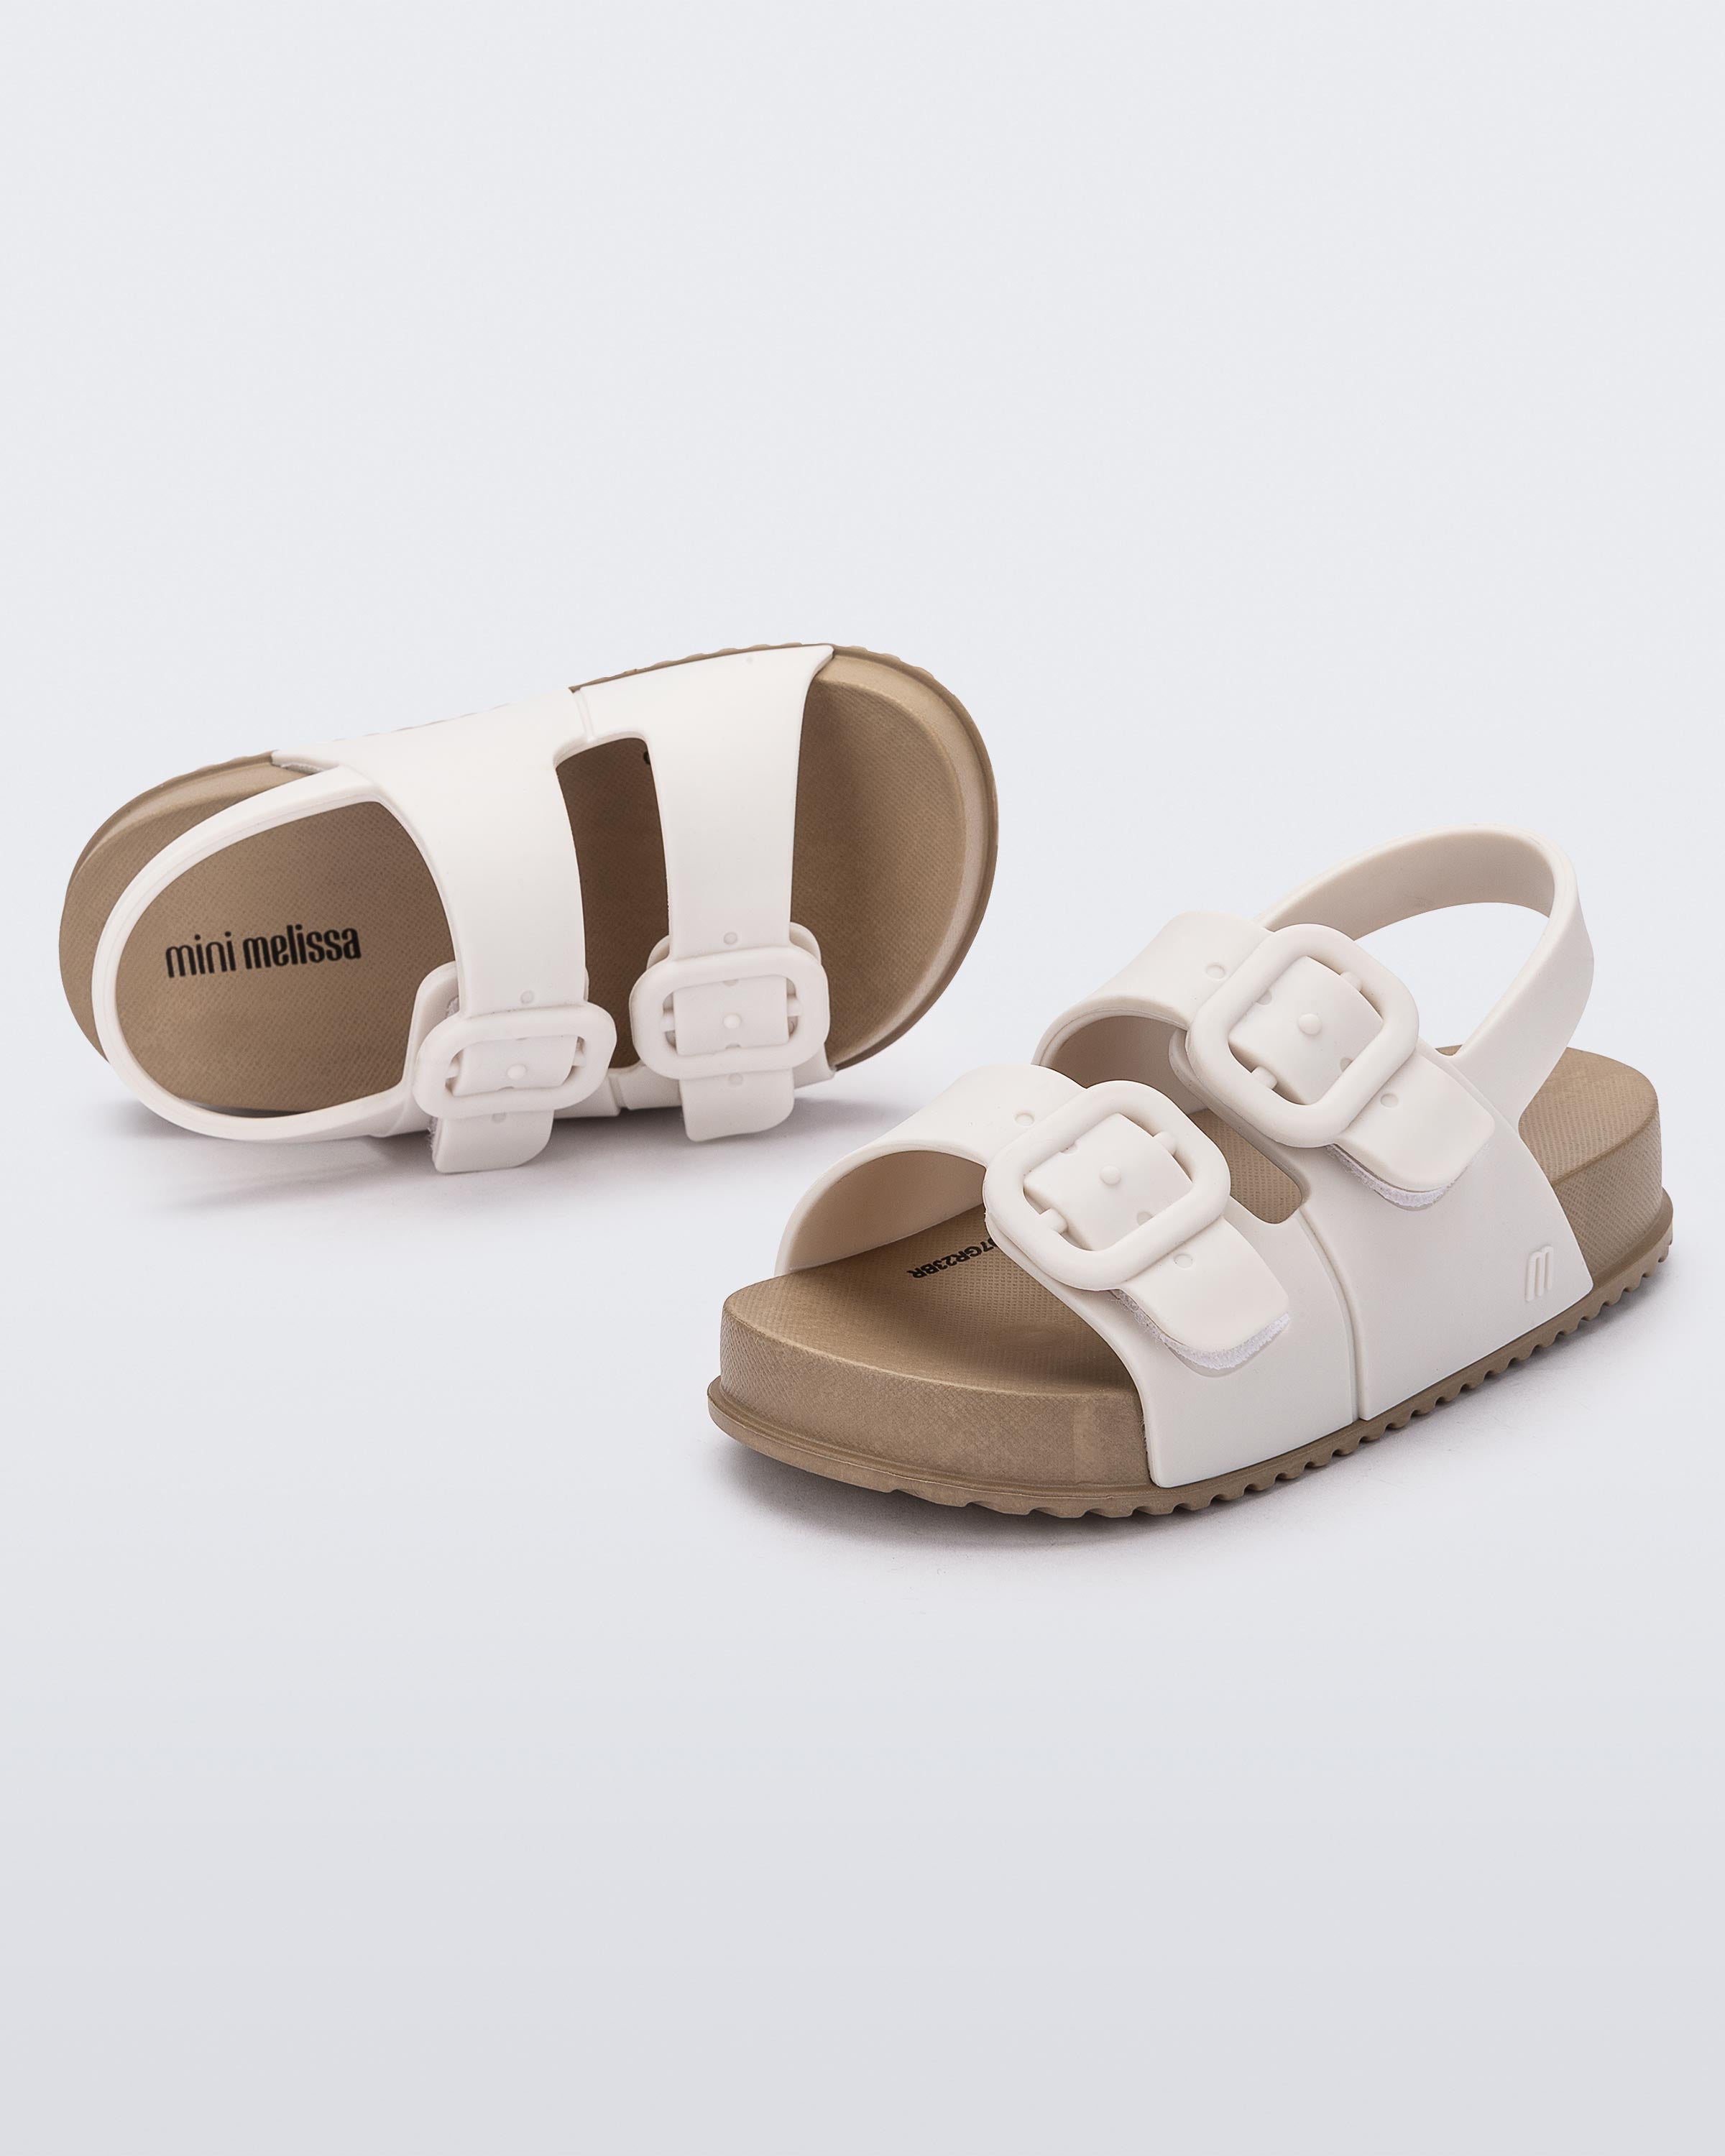 Mini sandalo Melissa Cozy - Marrone/Bianco